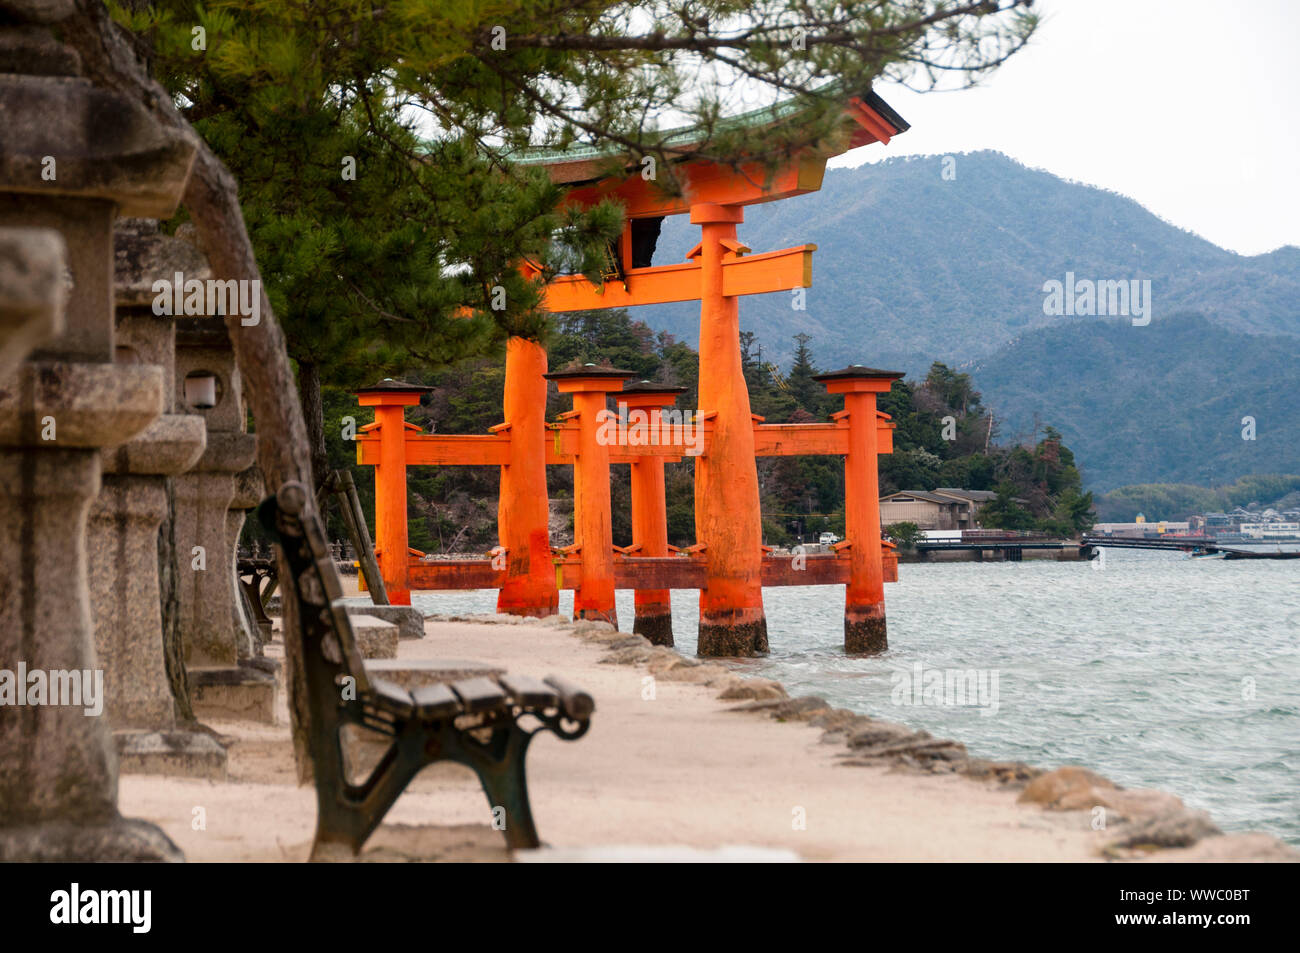 La porta torii del Santuario di Itsukushima sull'isola di Miyajima è un cancello galleggiante torii che intreccia architettura giapponese e natura. Foto Stock